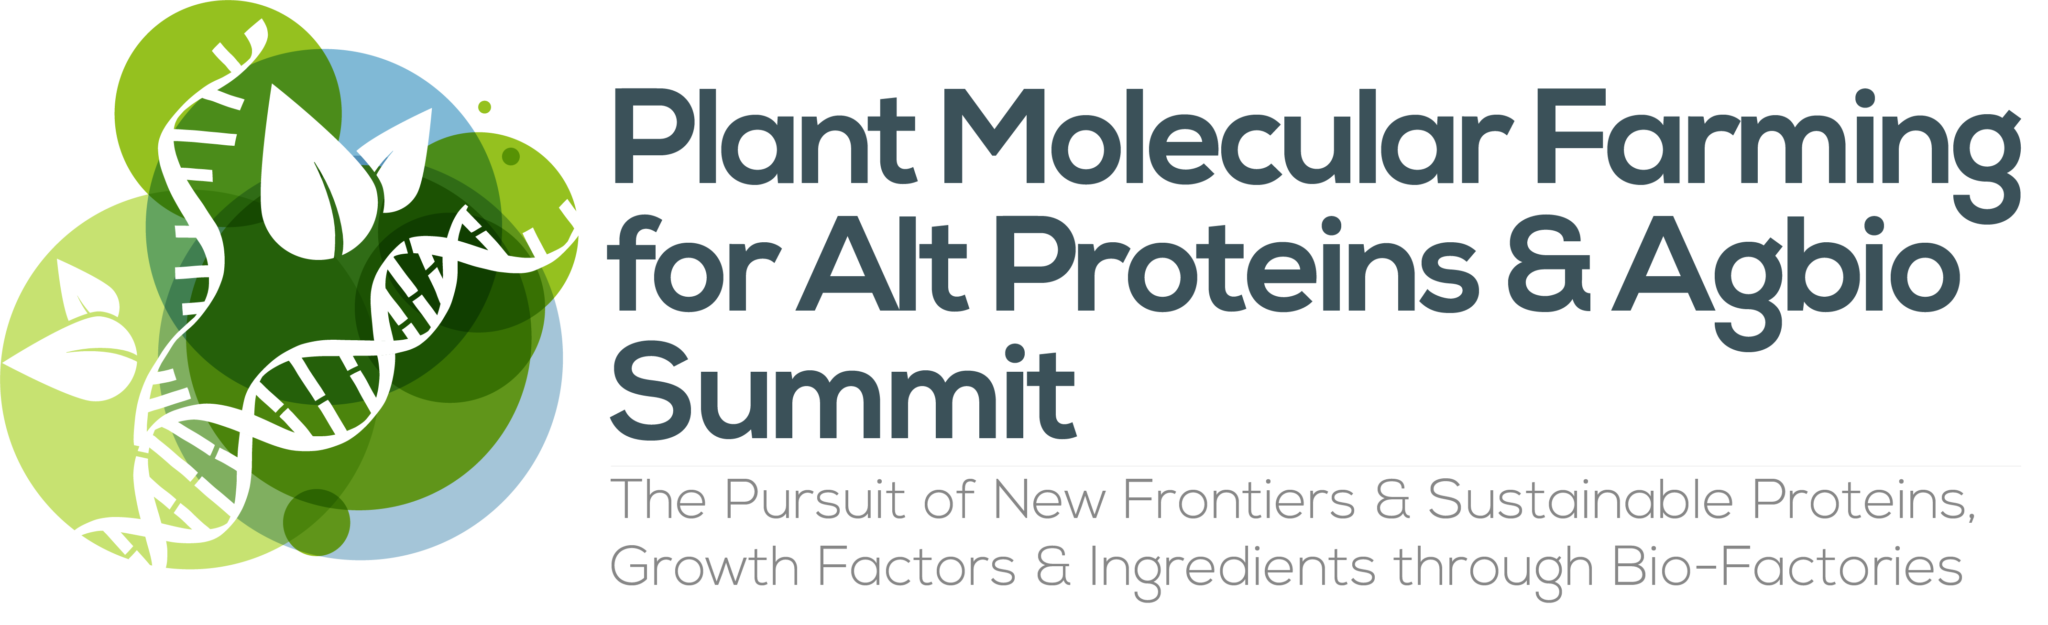 HW240117-50028-Plant-Molecular-Farming-for-AltProteins-Cellular-Agbio-Summit-logo-FINAL-1-2048x625